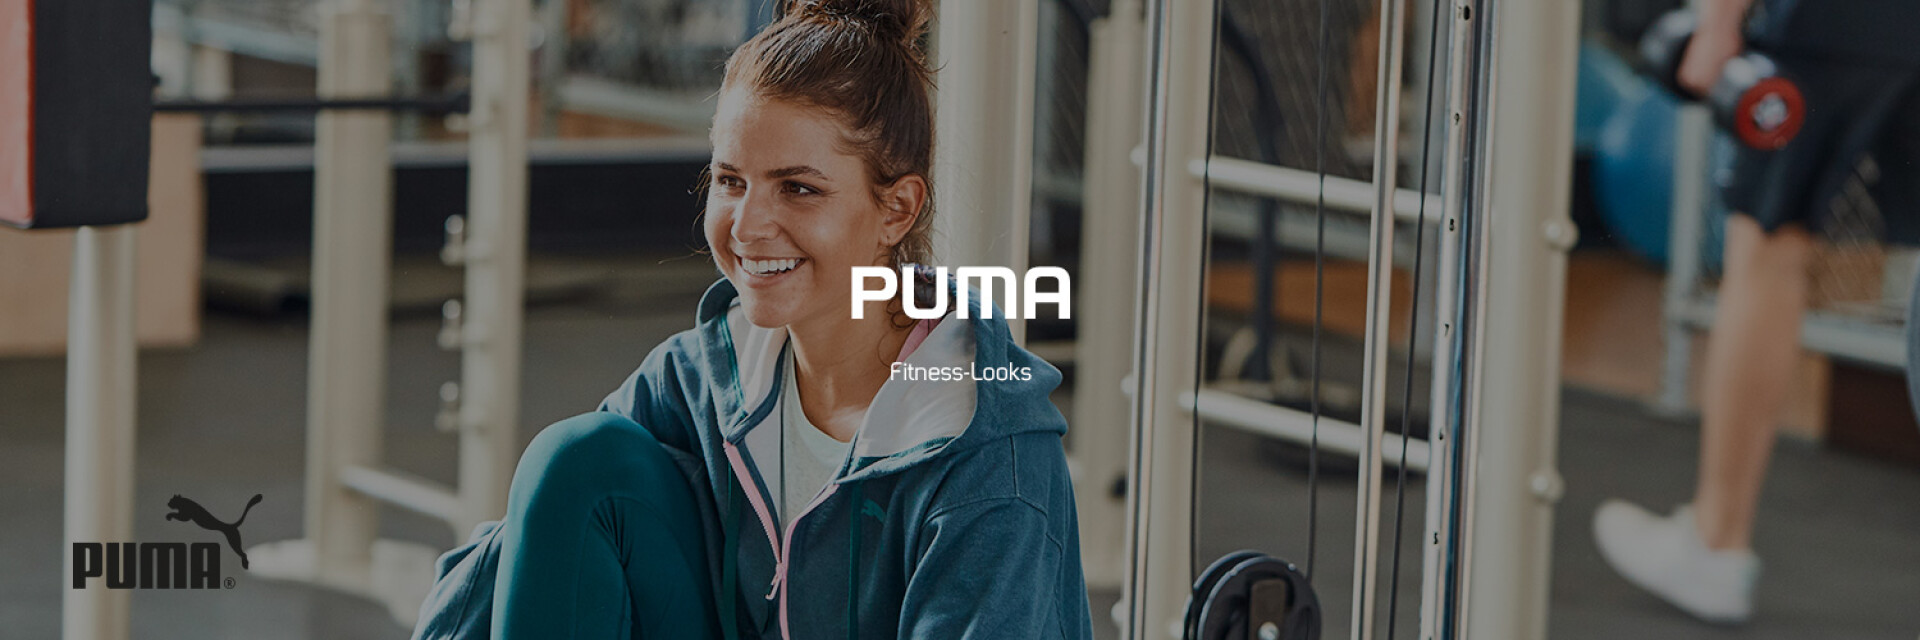 Puma Fitness-Look Damen